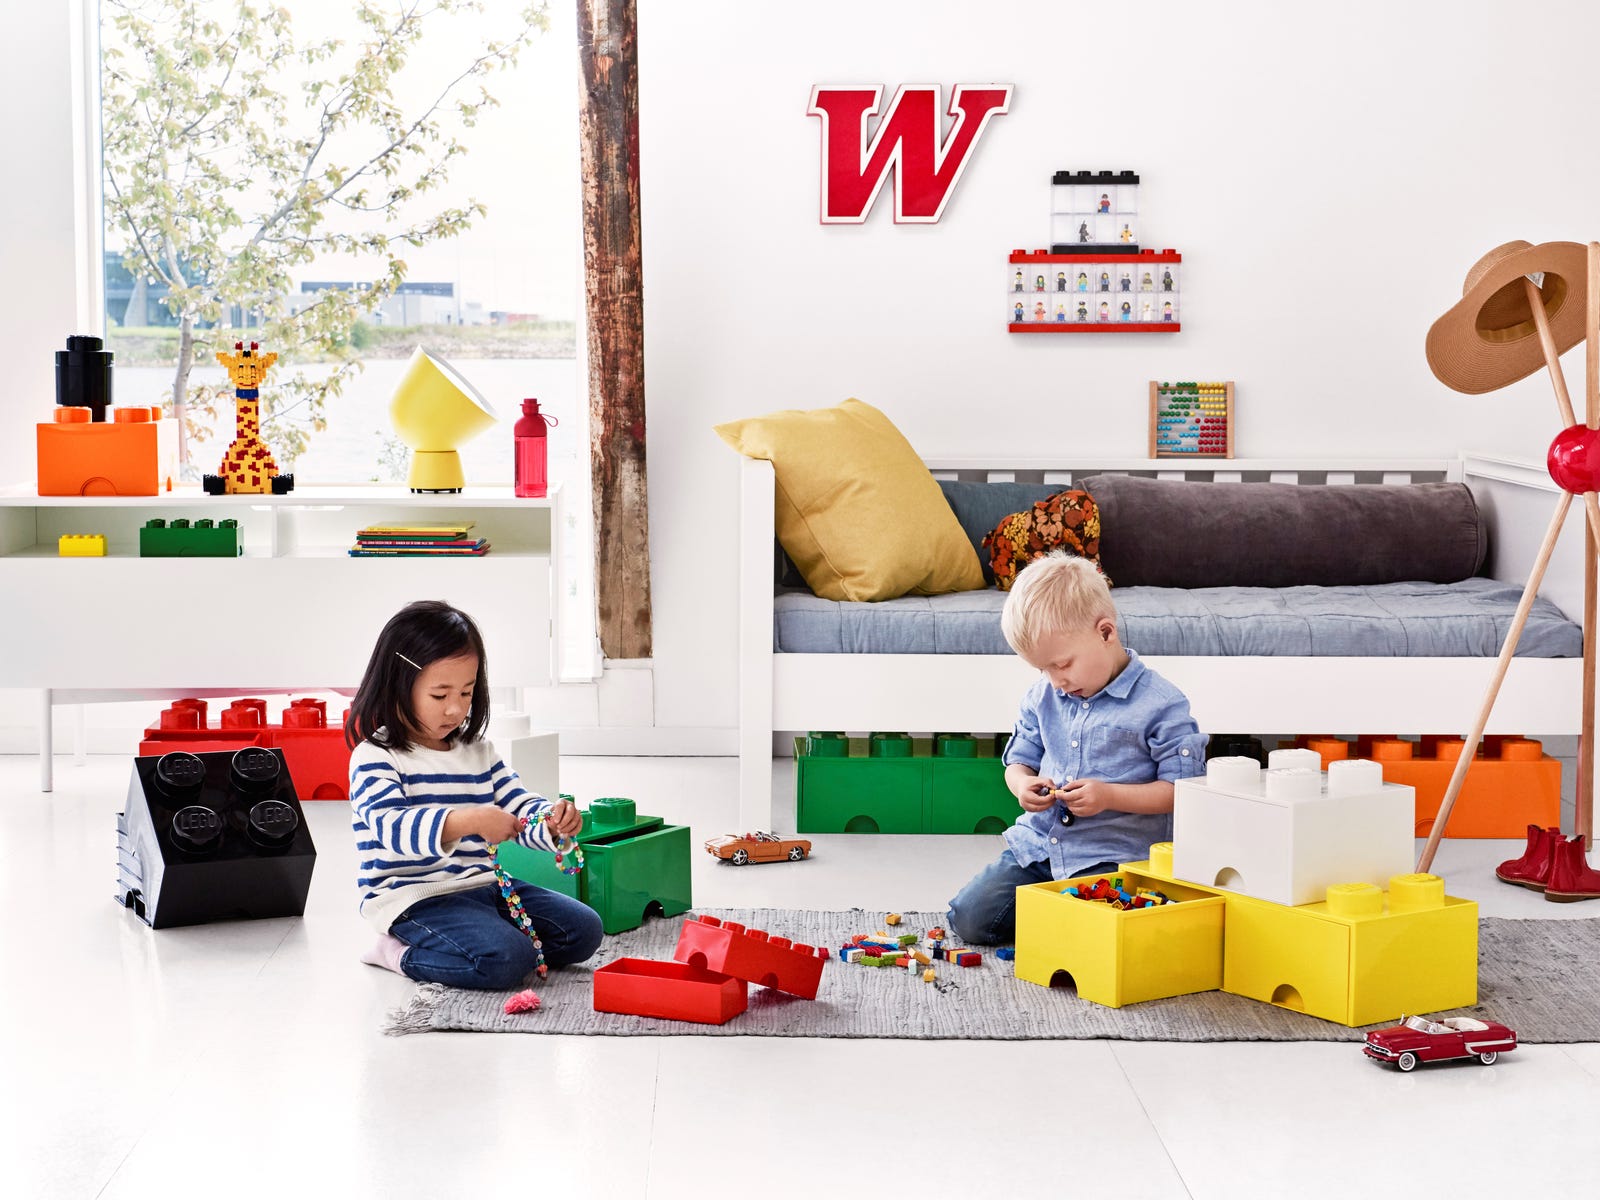 Lego Storage Brick säilytyslaatikot - Tyylikäs ja leikkisä lelujemma lastenhuoneeseen